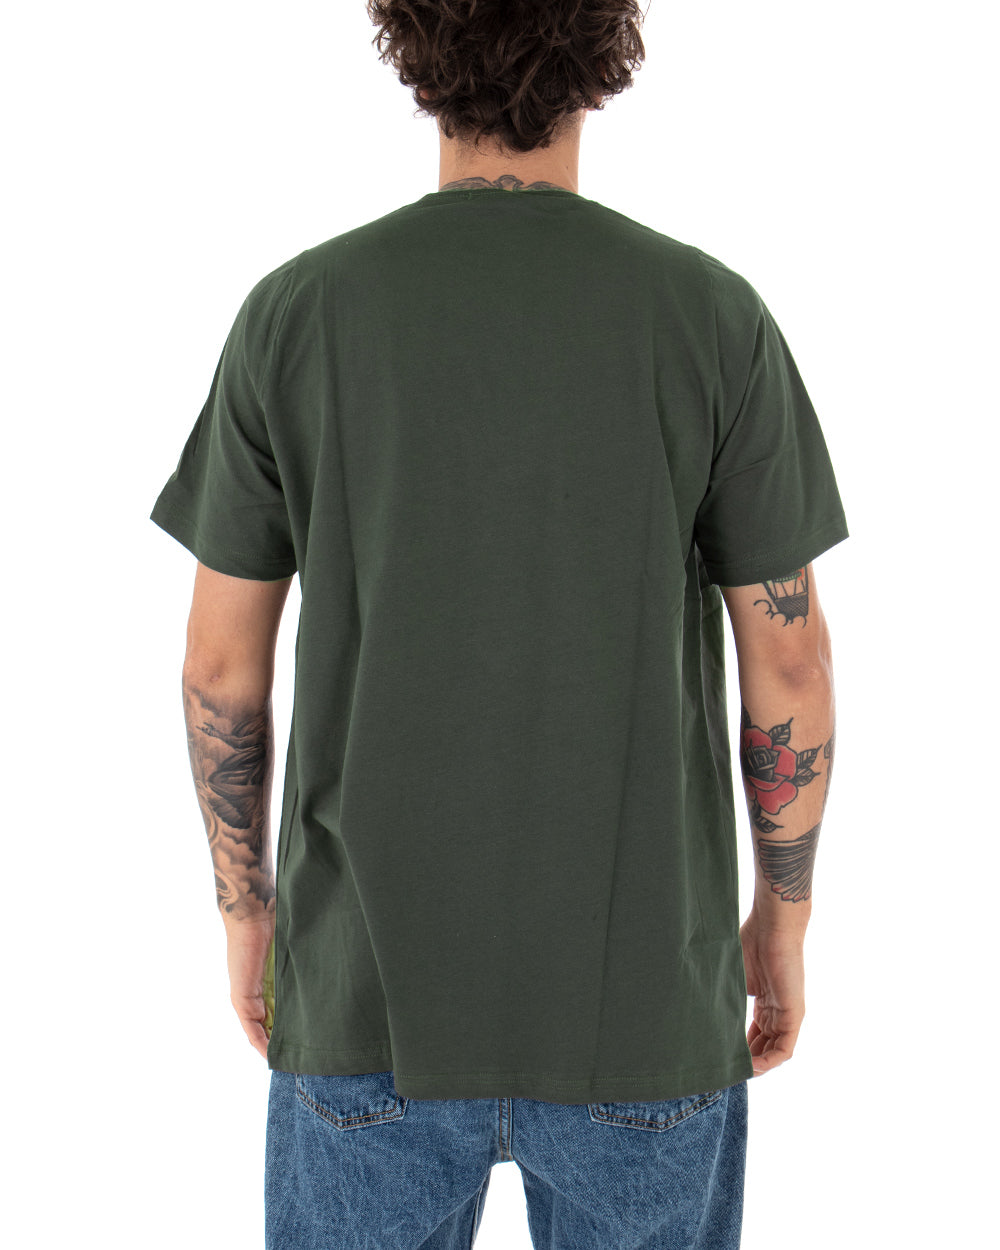 T-Shirt Uomo Oversize Tinta Unita Verde Militare Maglia Maniche Corte Girocollo Cotone GIOSAL